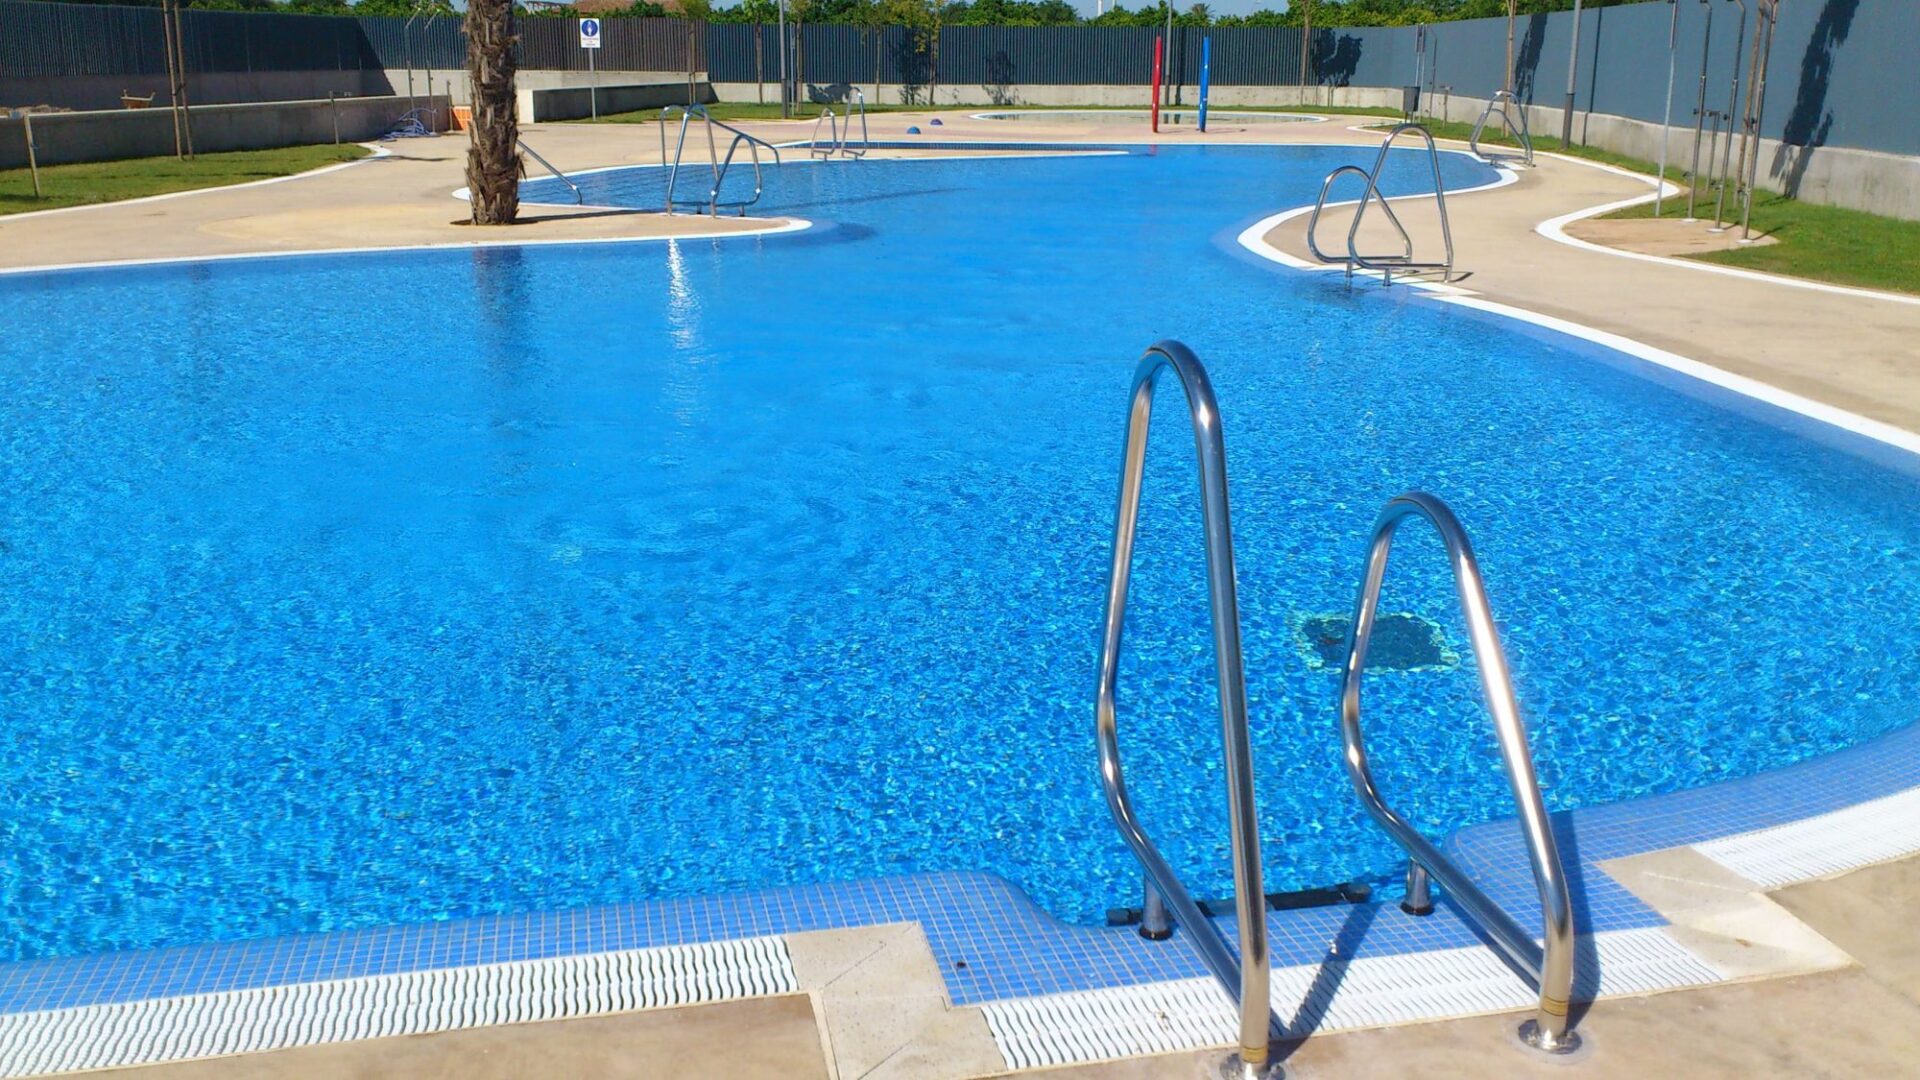 La piscina municipal de verano se abre el 17 junio 2017 1